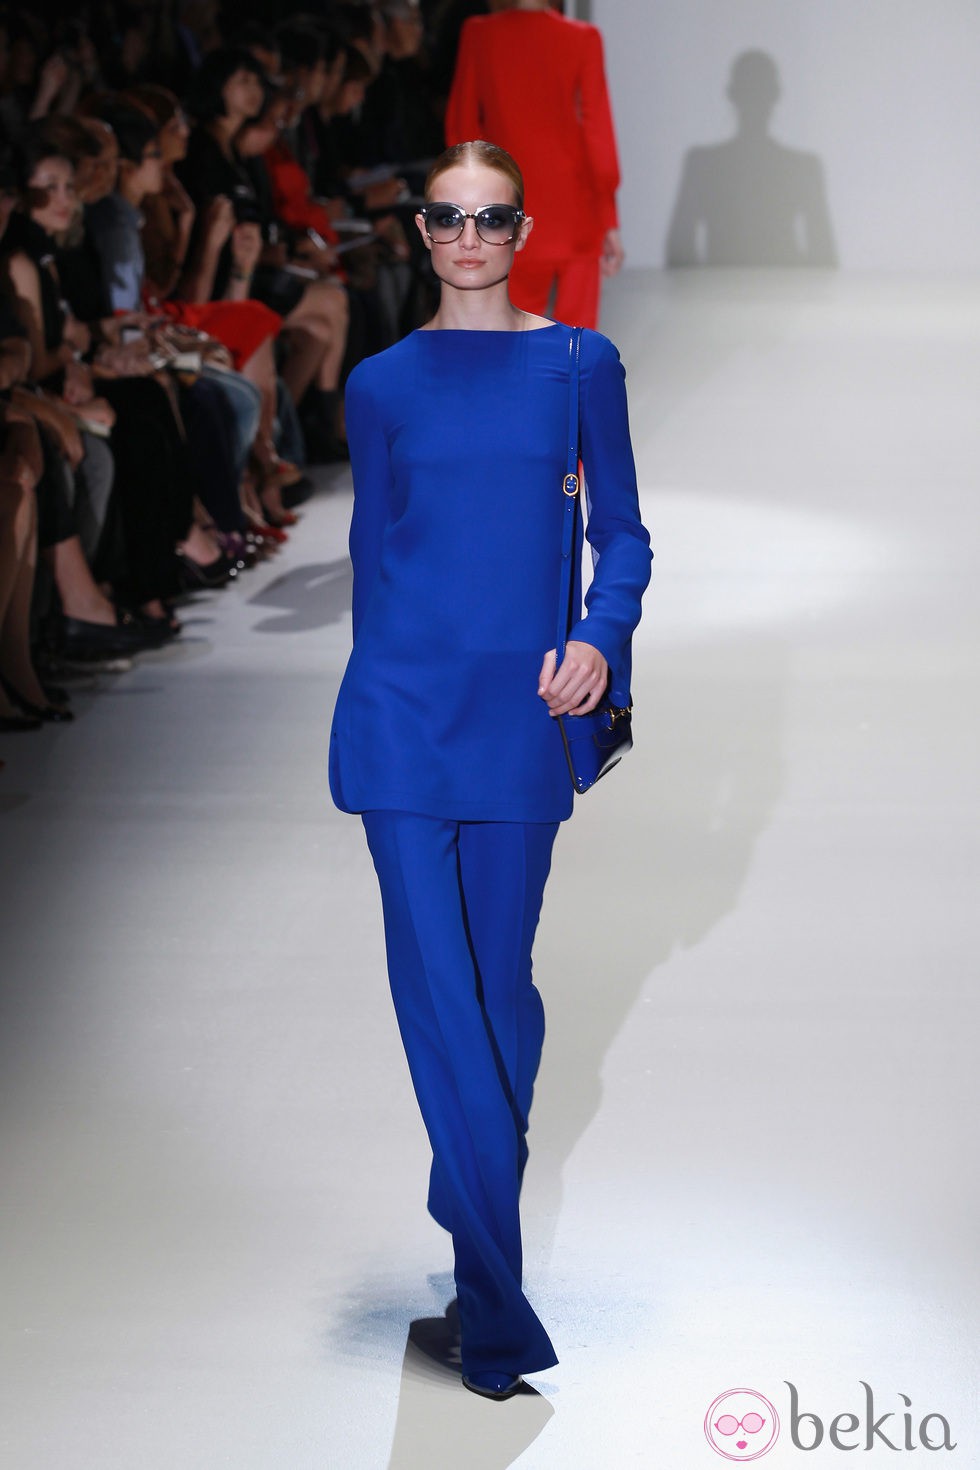 Conjunto en azul klein en el desfile de Gucci en la Semana de la Moda de Milán primavera/verano 2013